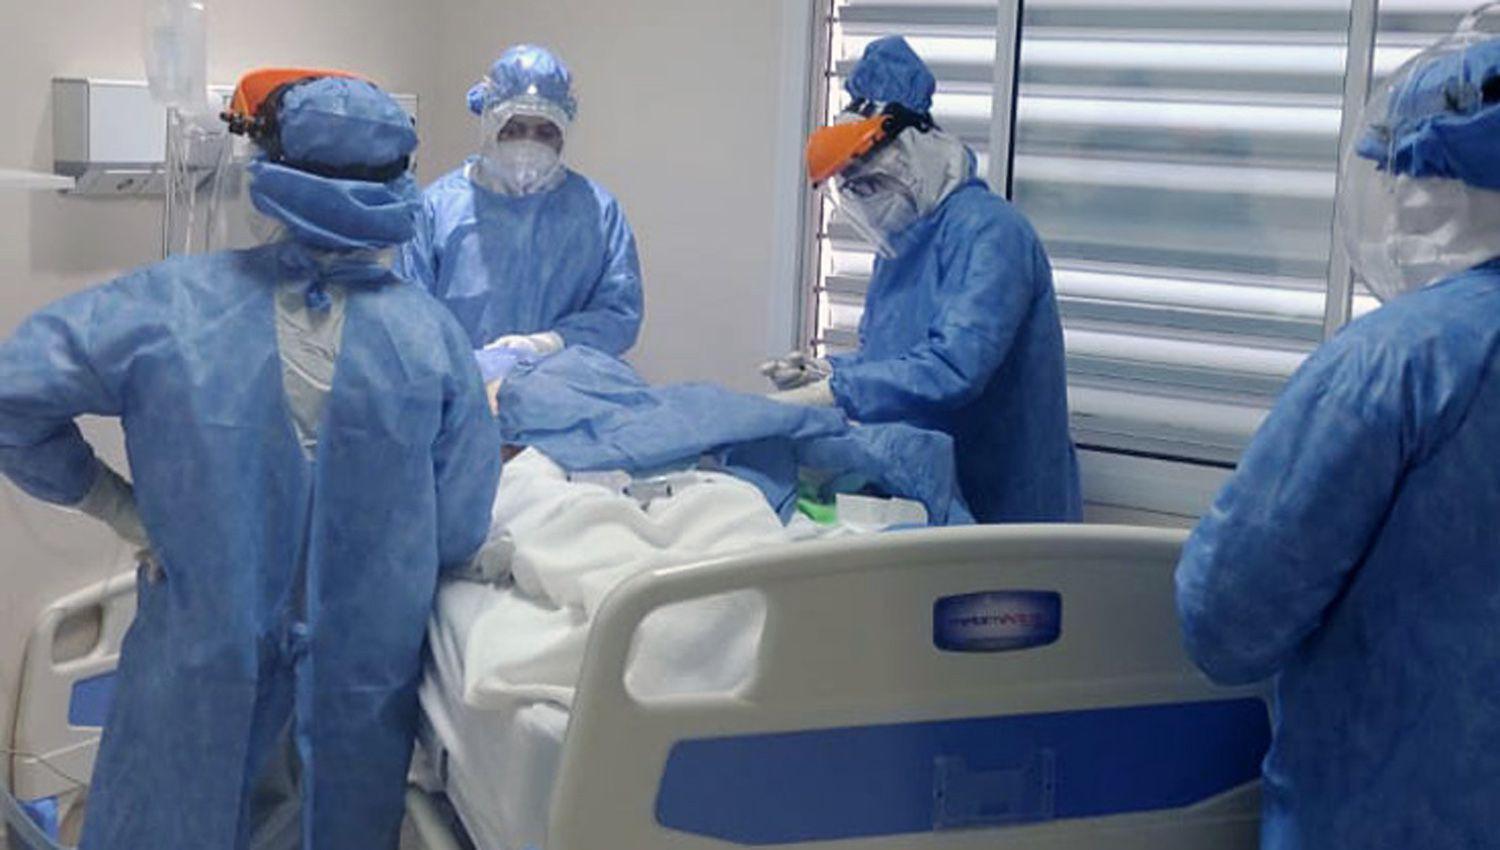 Reacutecord de muertes y contagios de coronavirus en Santiago